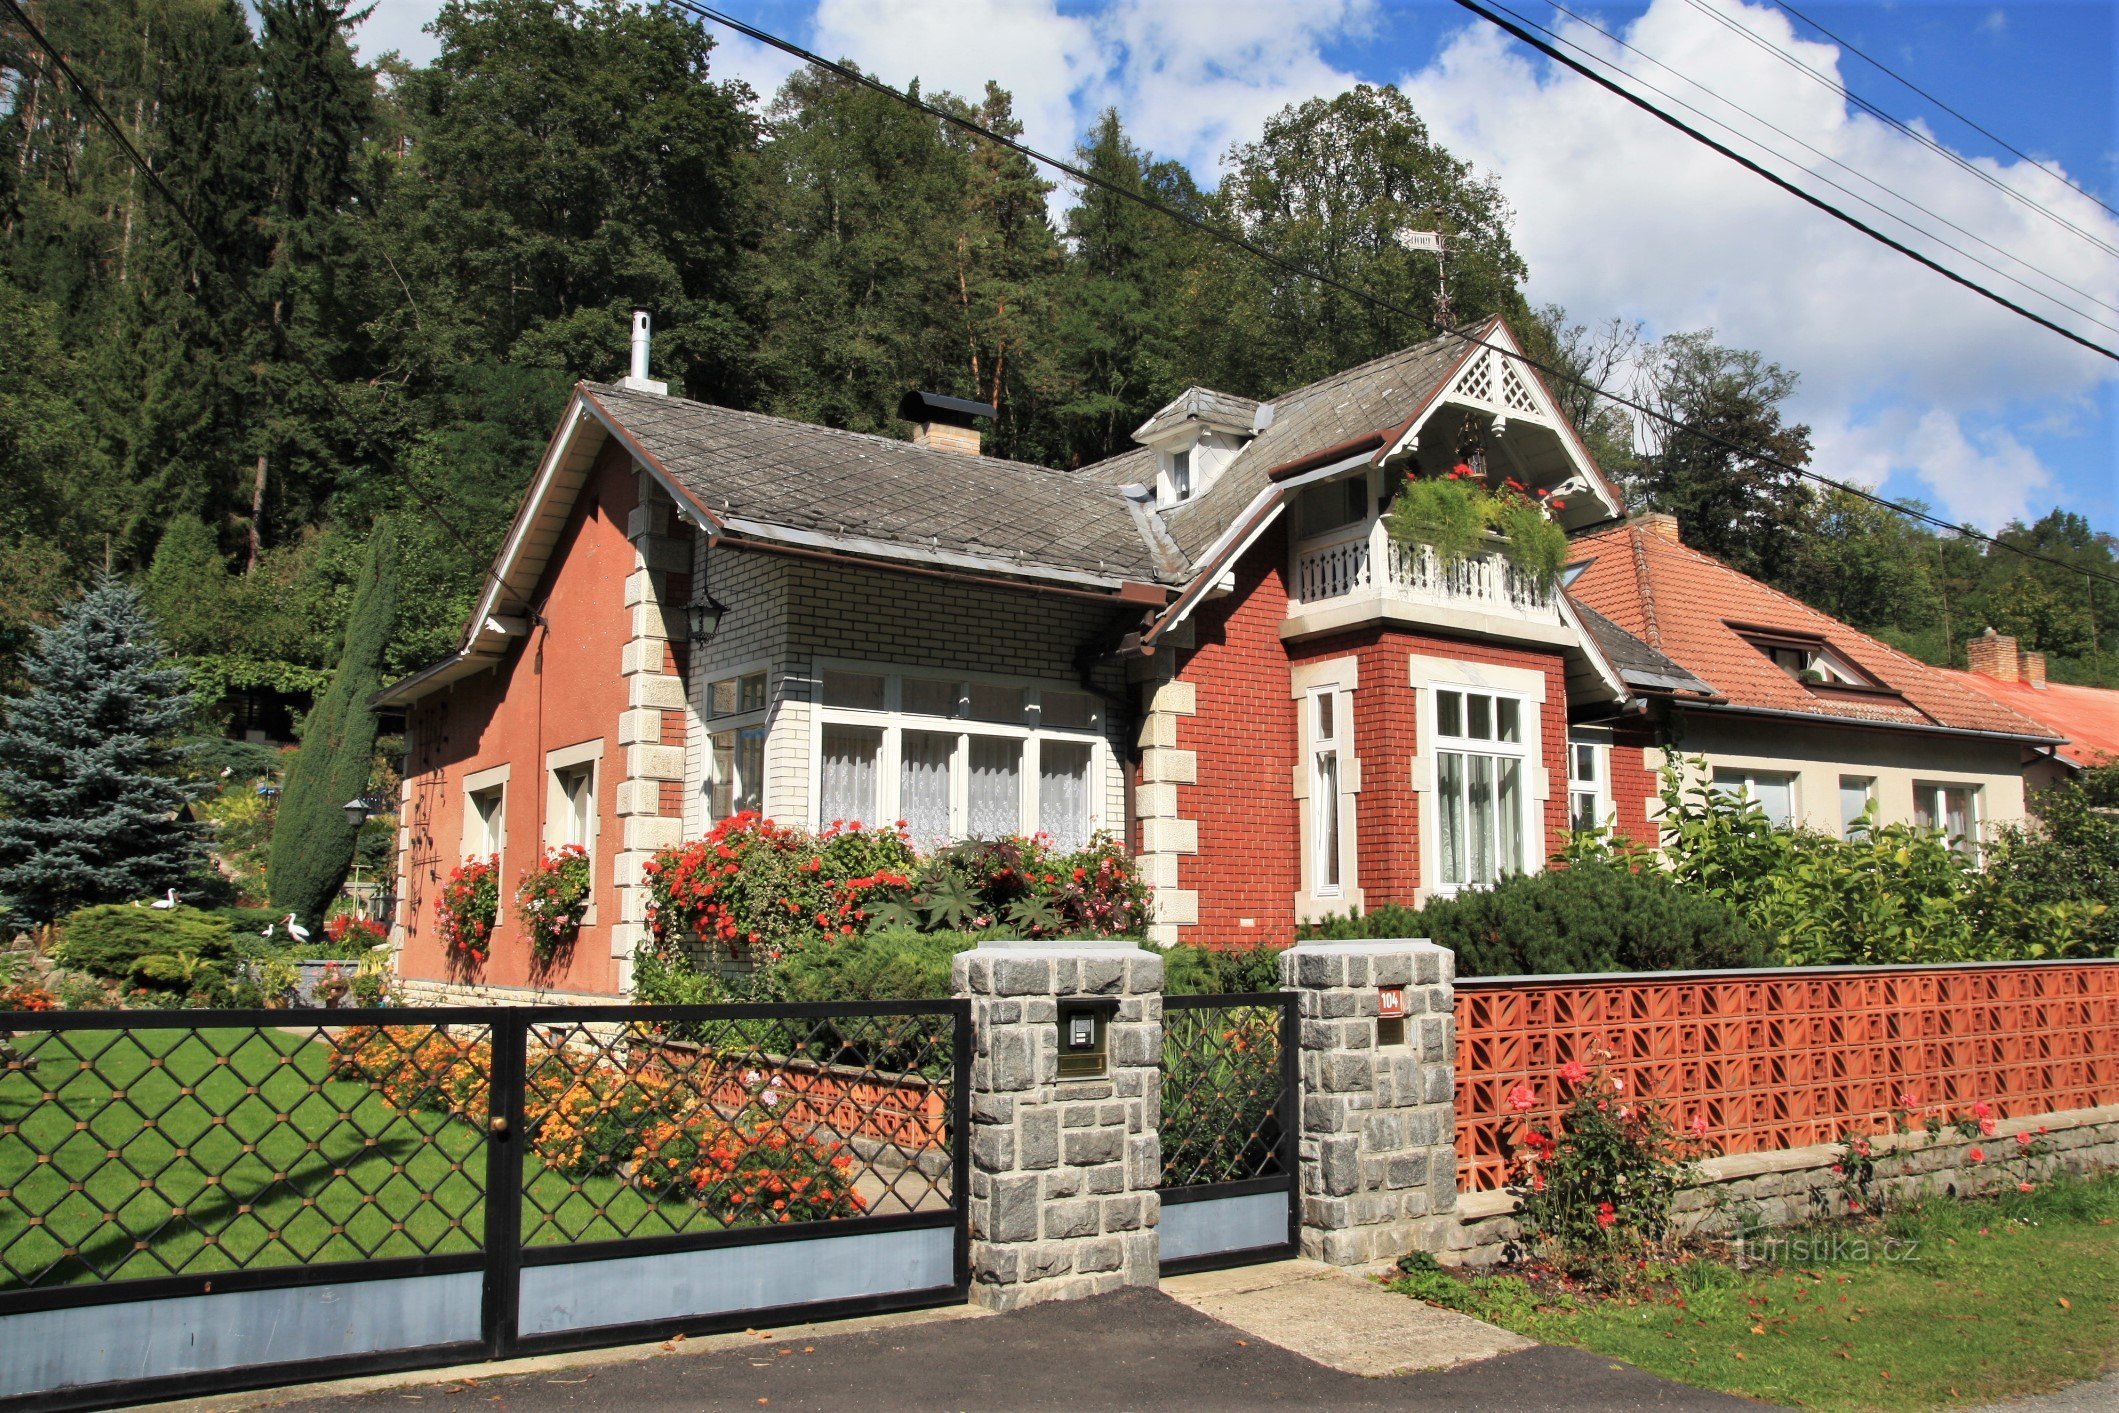 Nedvedice - Loos' villa